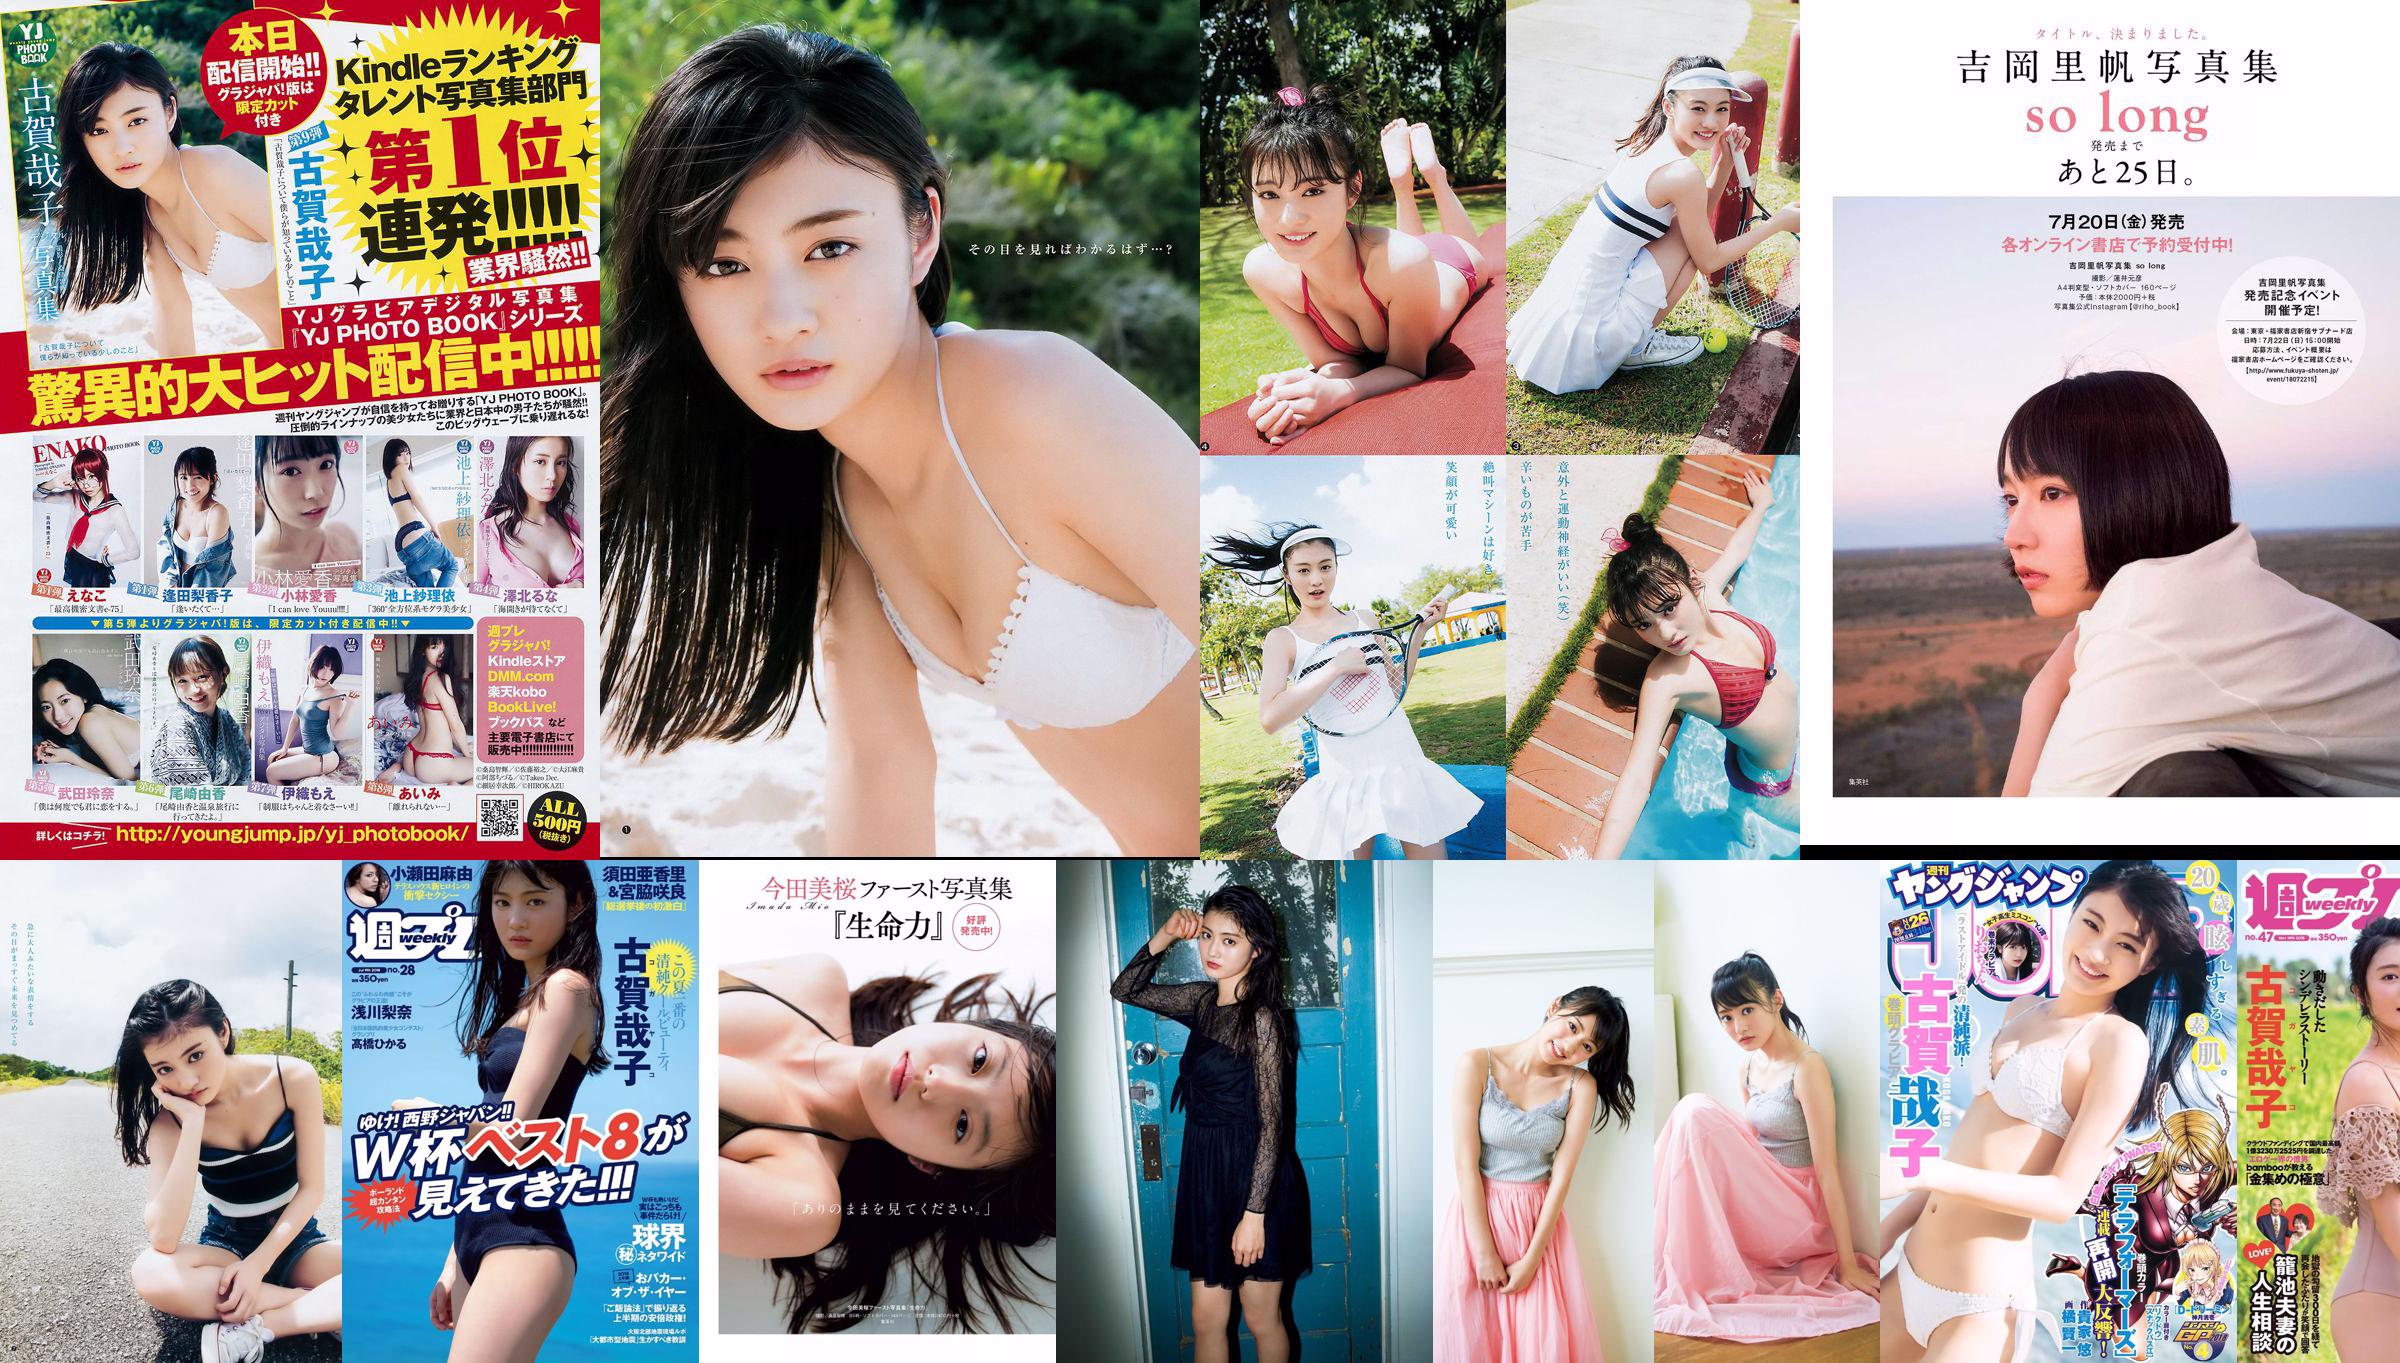 古賀哉子 りおちょん [Weekly Young Jump] 2018年No.26 写真杂志 No.80af5c 第3頁